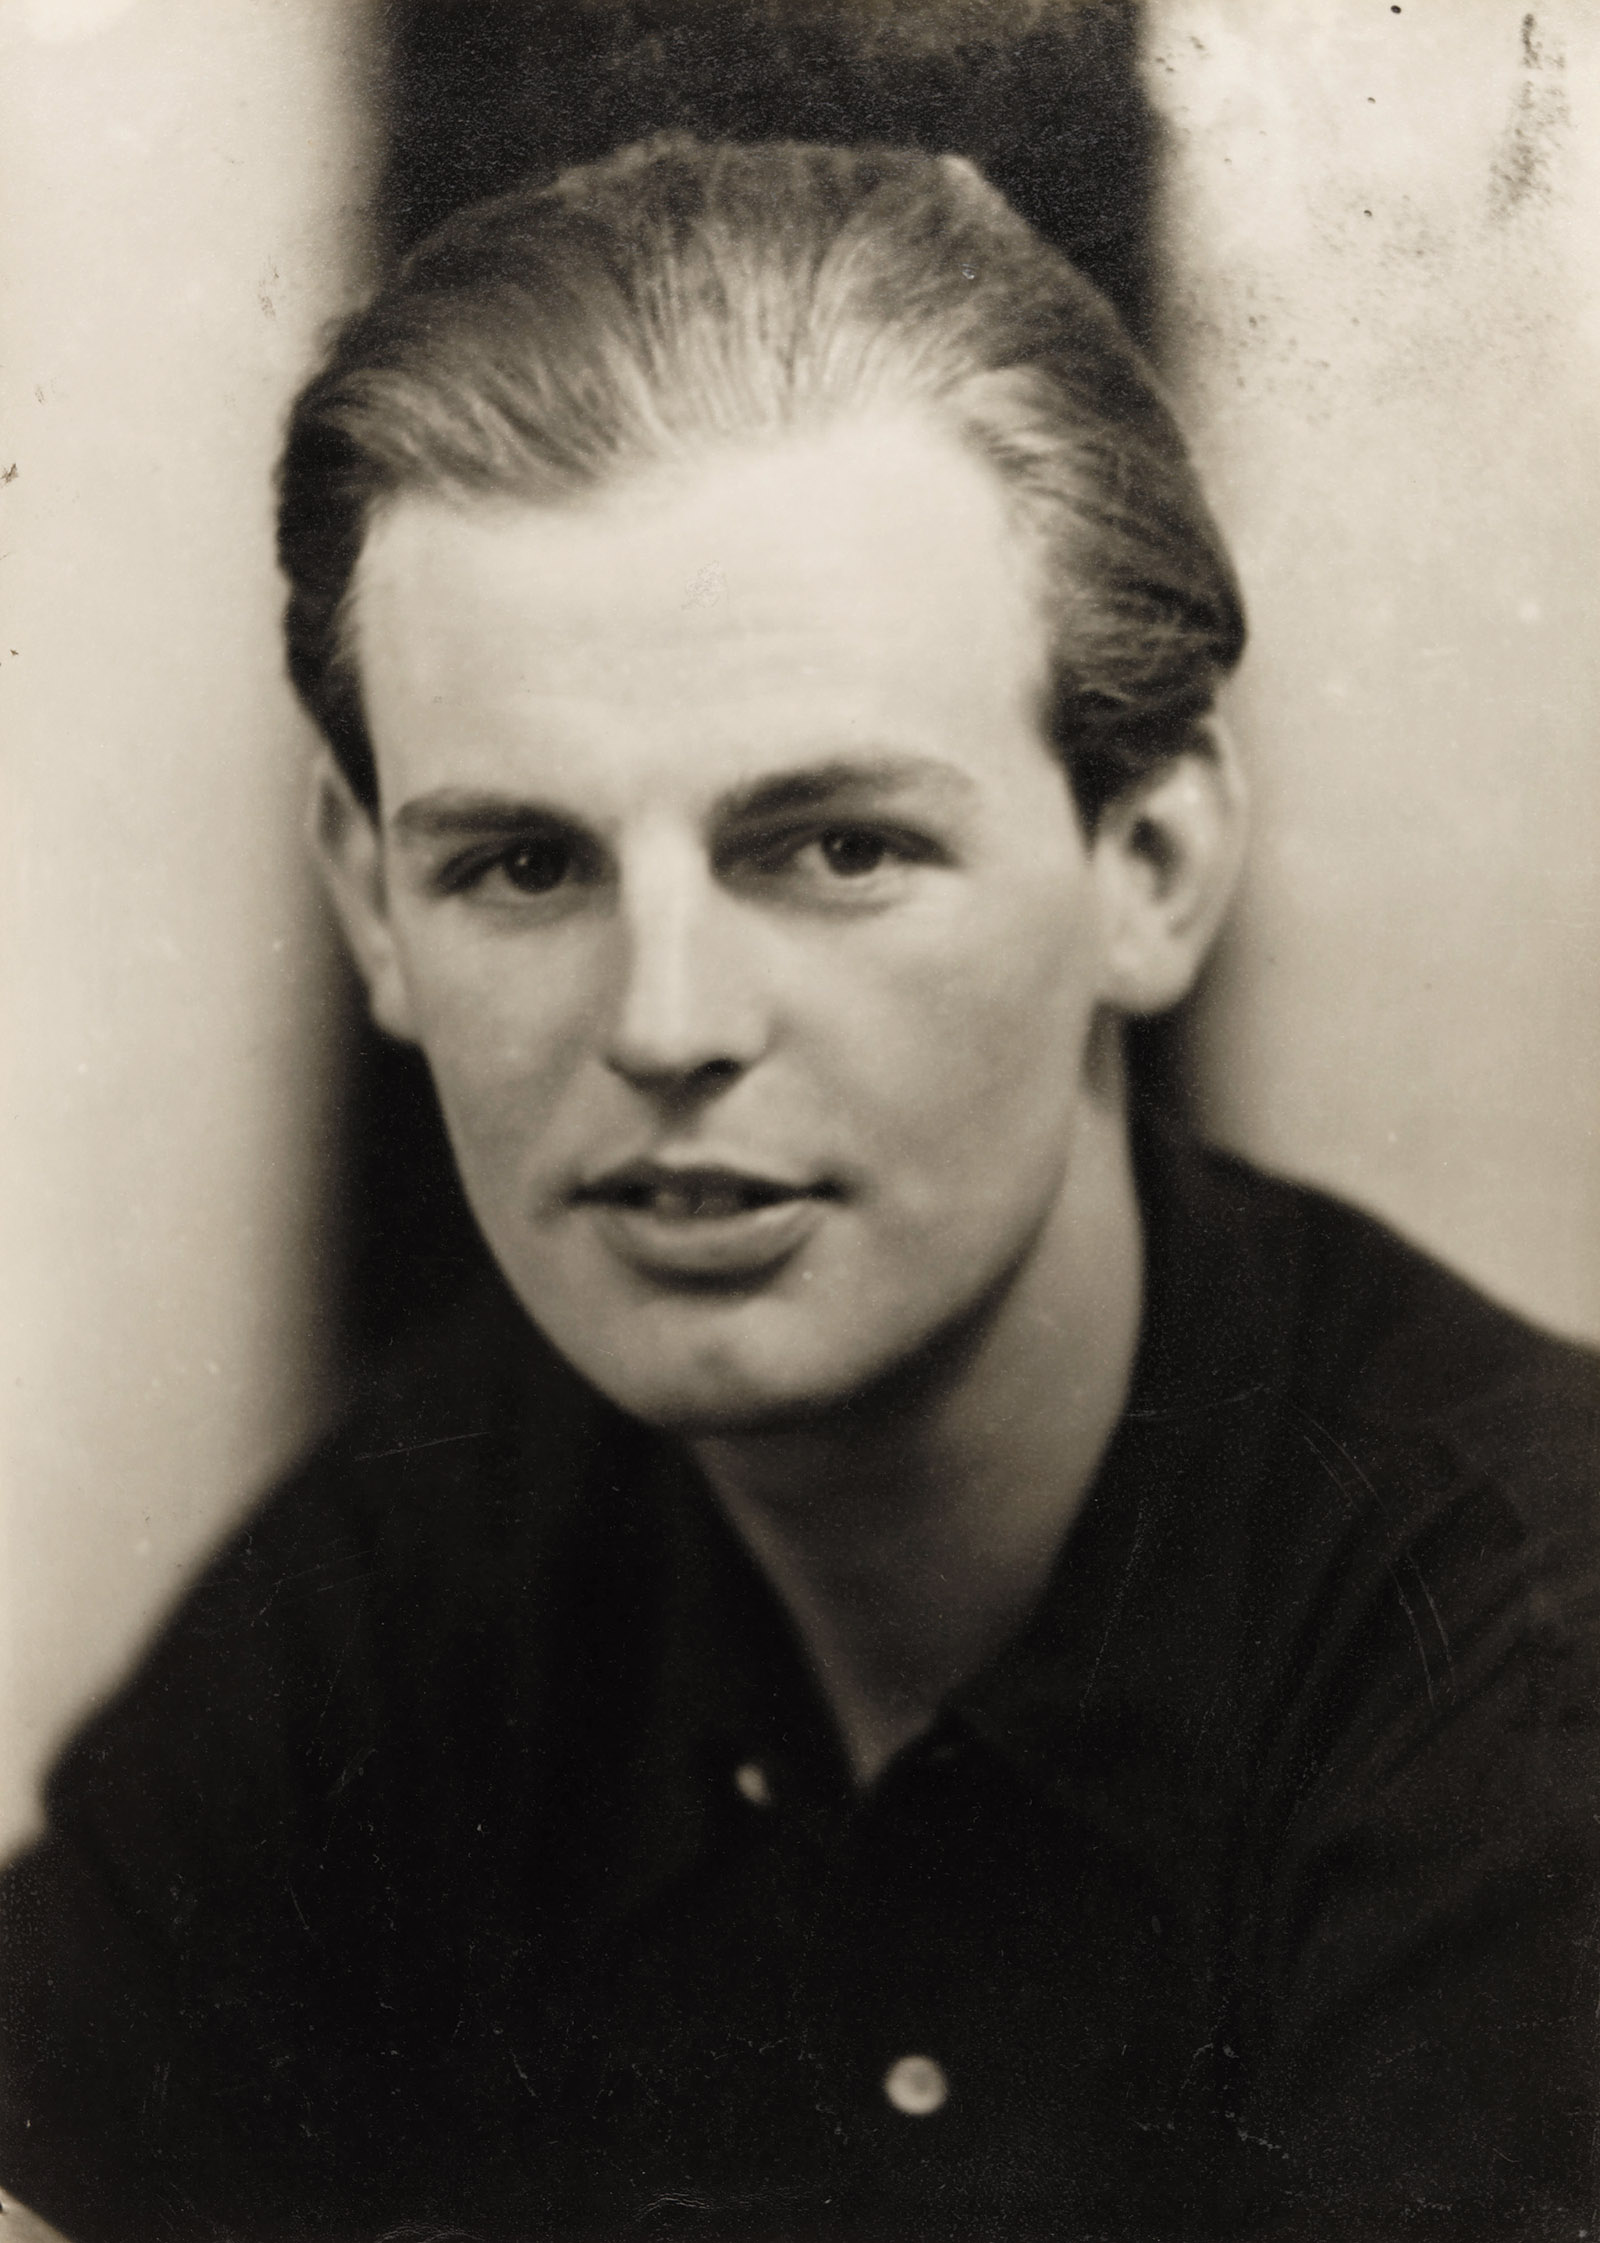 Donald Maclean, 1930s